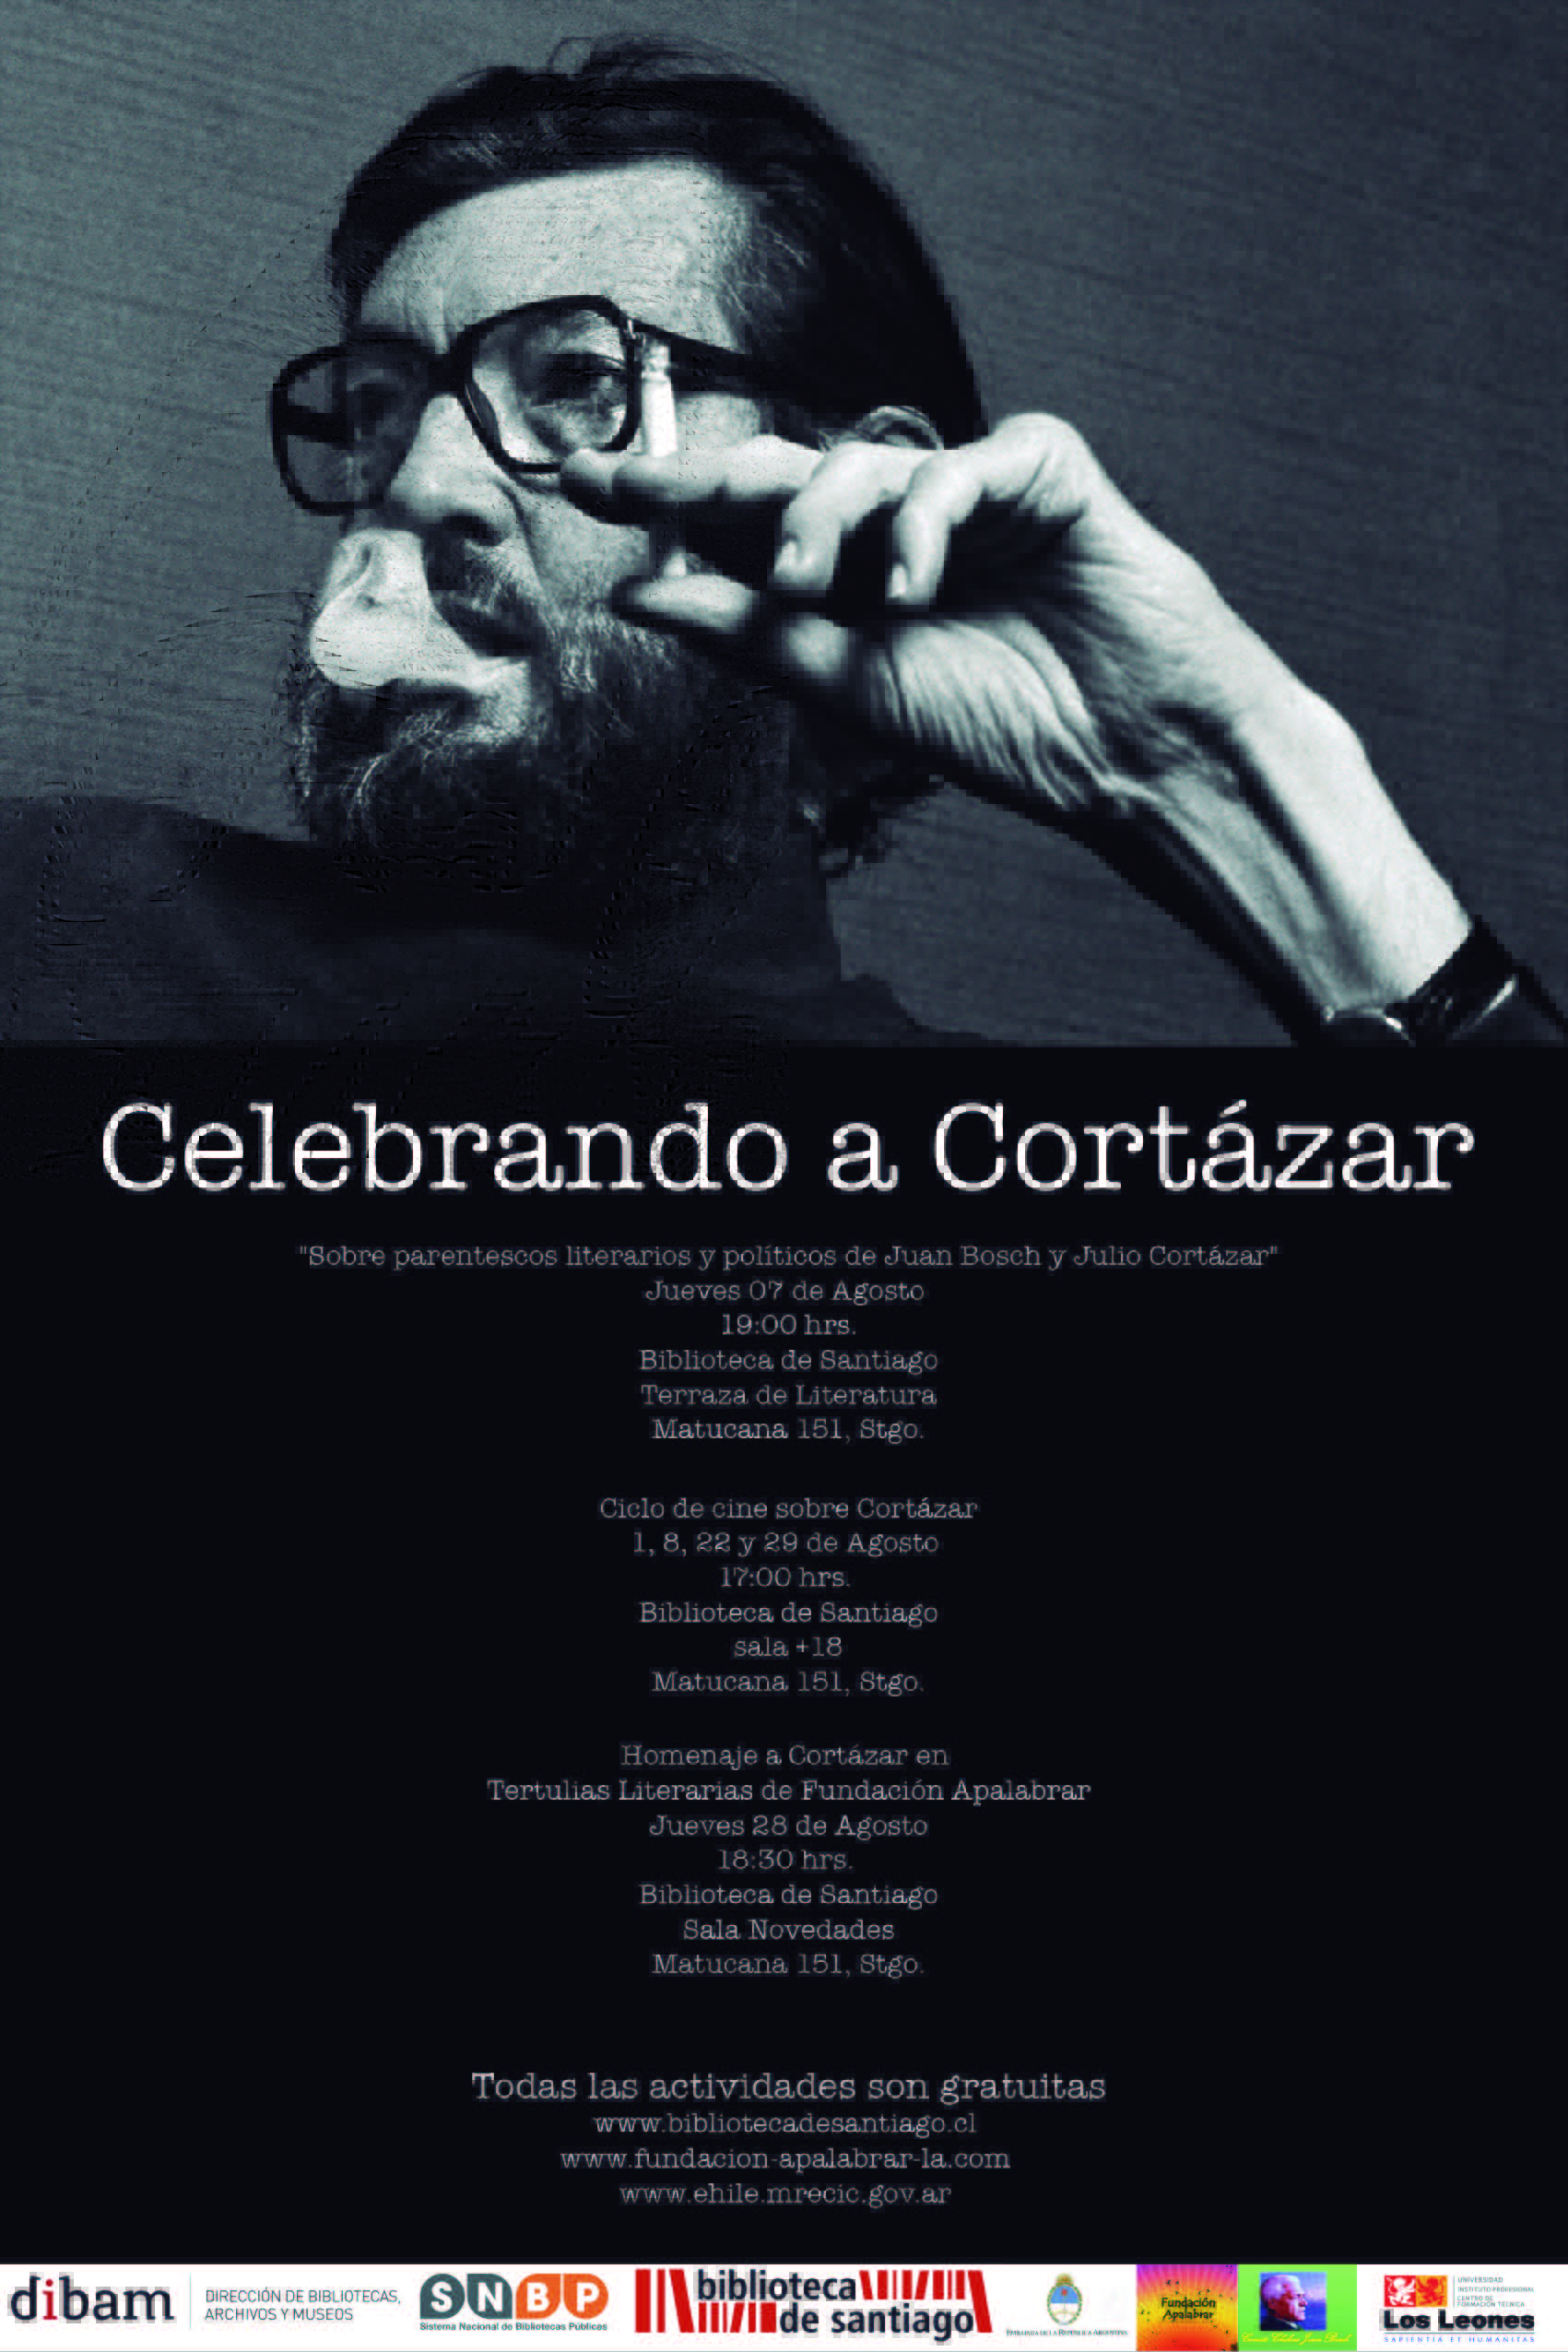 You are currently viewing “Celebrando a Cortázar”, 100 años del natalicio del afamado escritor argentino @BibliotecadStgo